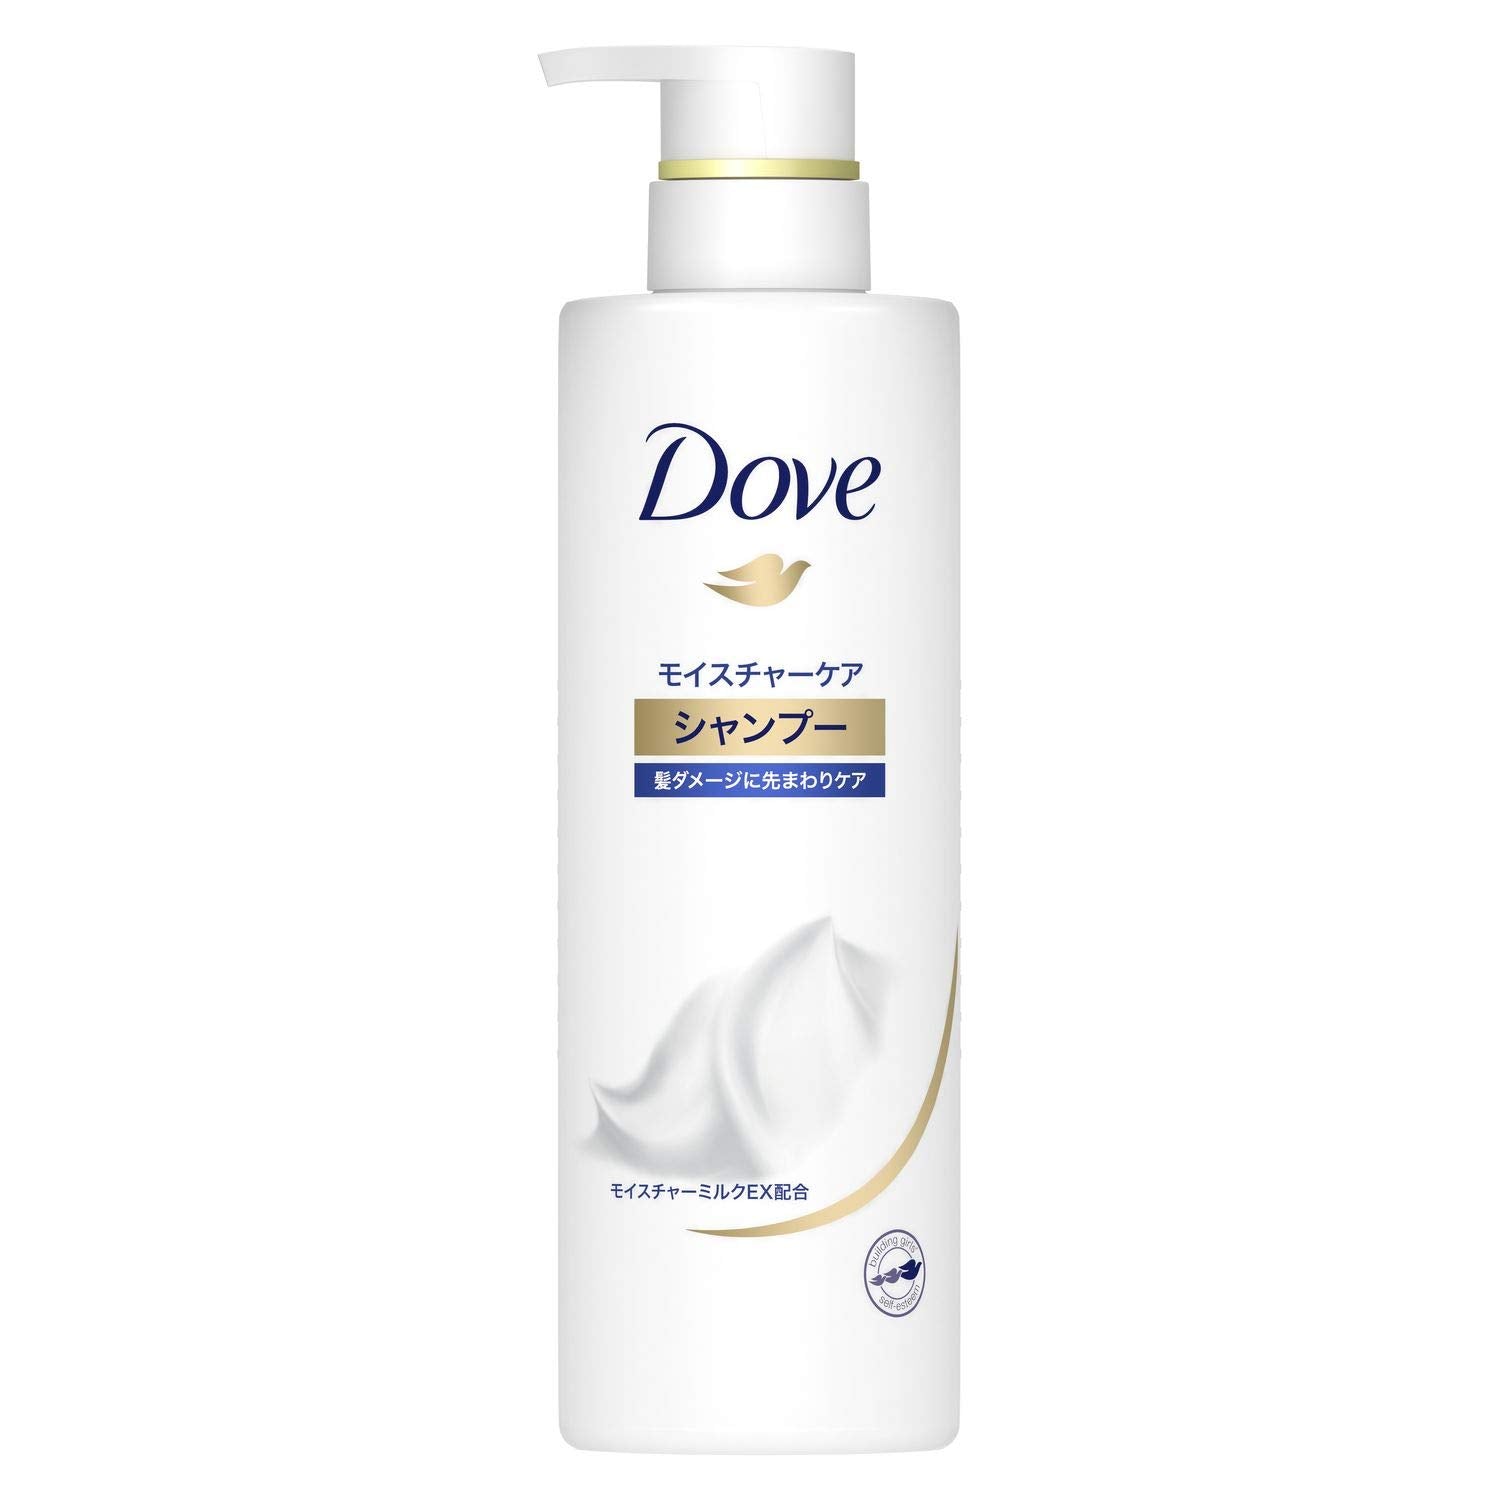 Dove Moisture Care Shampoo For Smooth & Silky Hair 500g, Japanese Taste